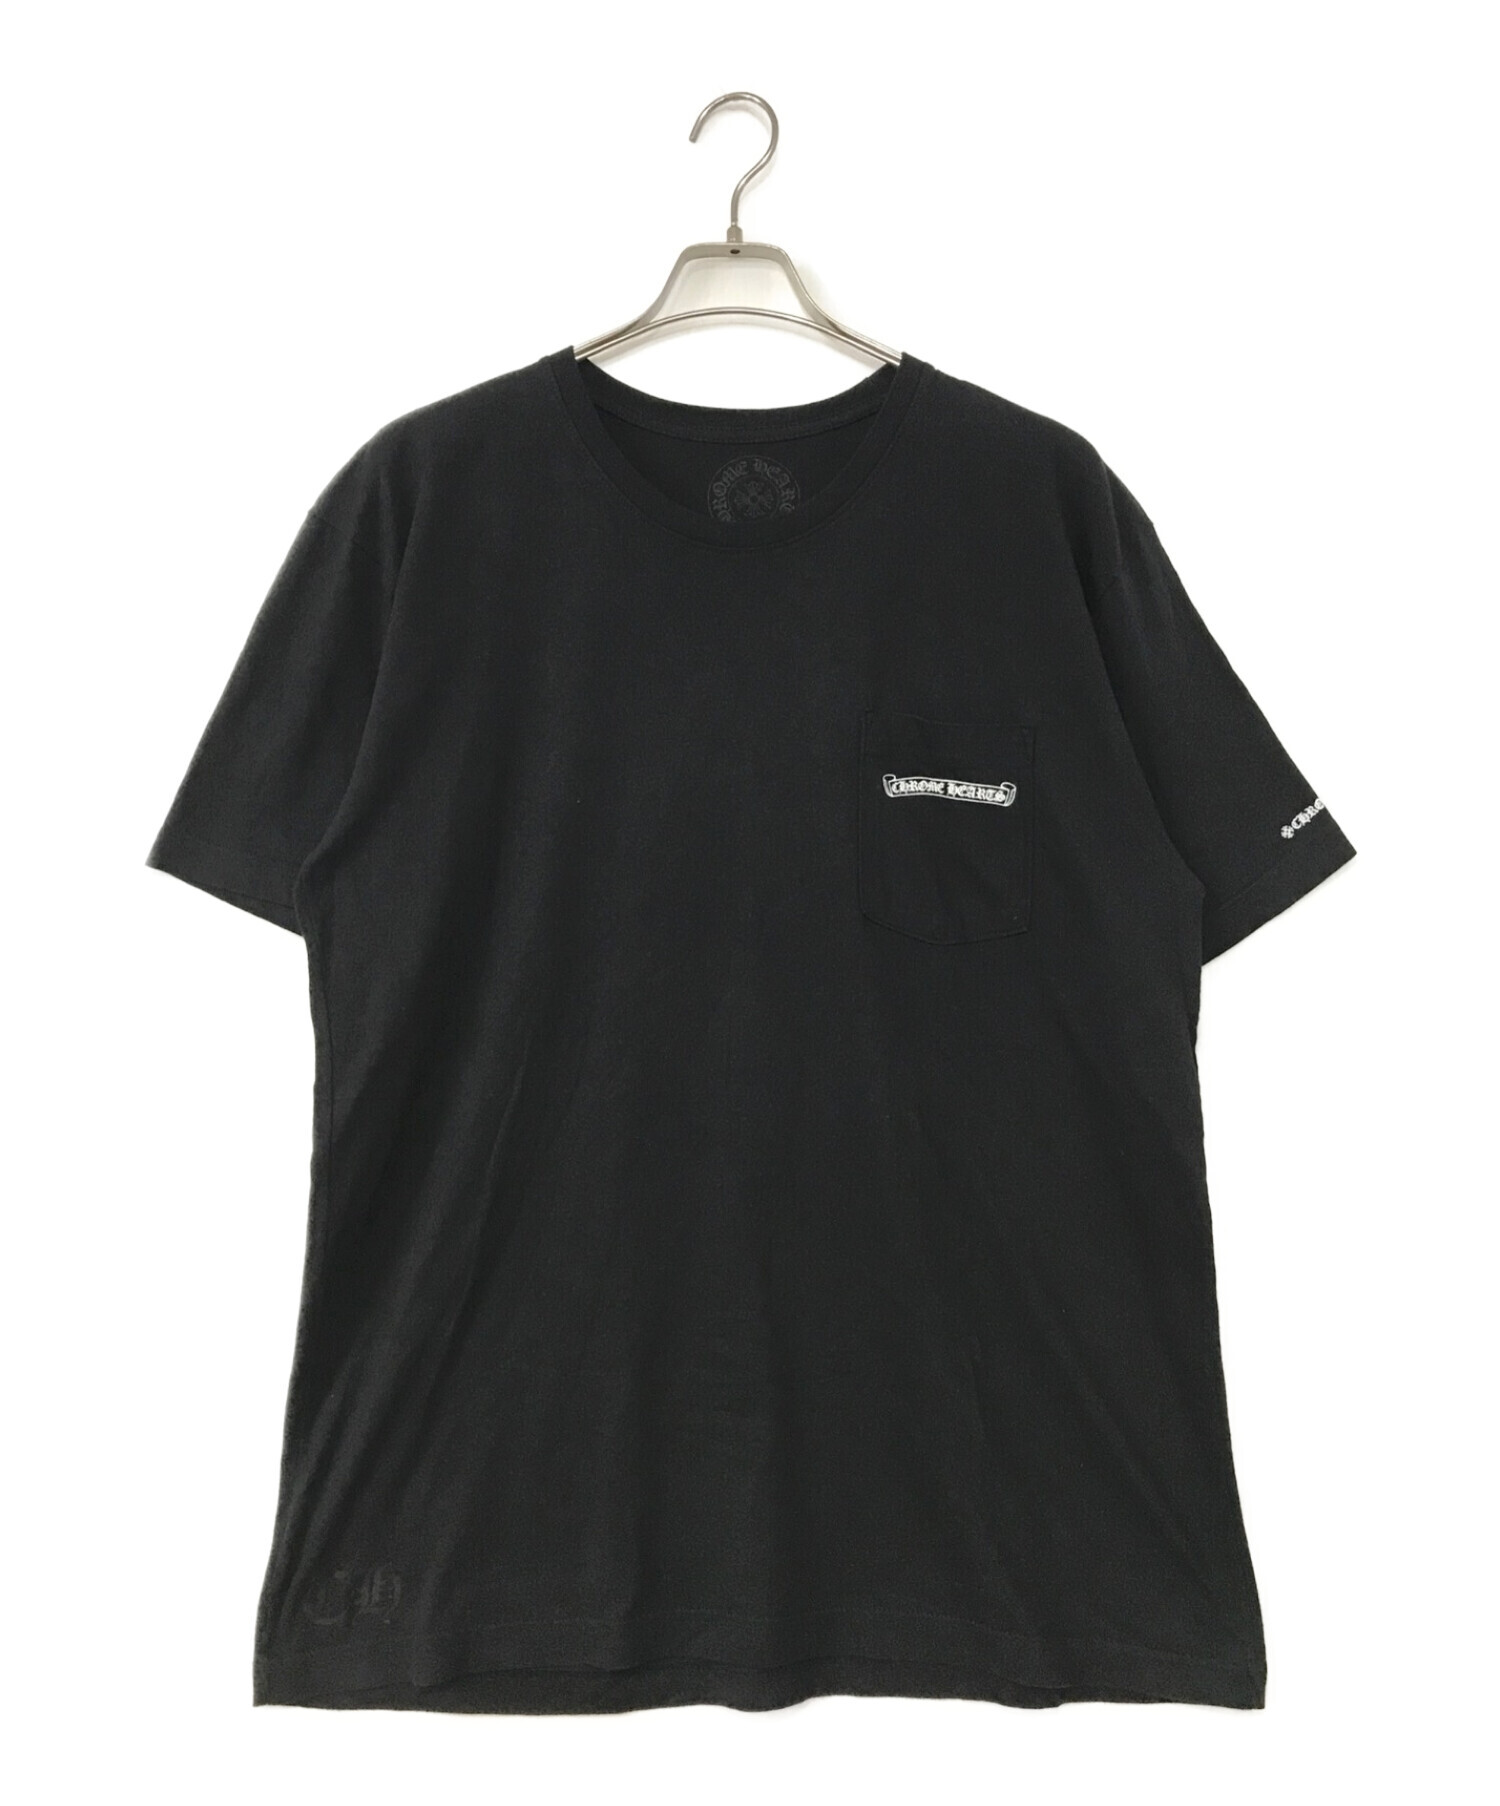 CHROME HEARTS (クロムハーツ) スクロールラベルtシャツ ブラック サイズ:XL